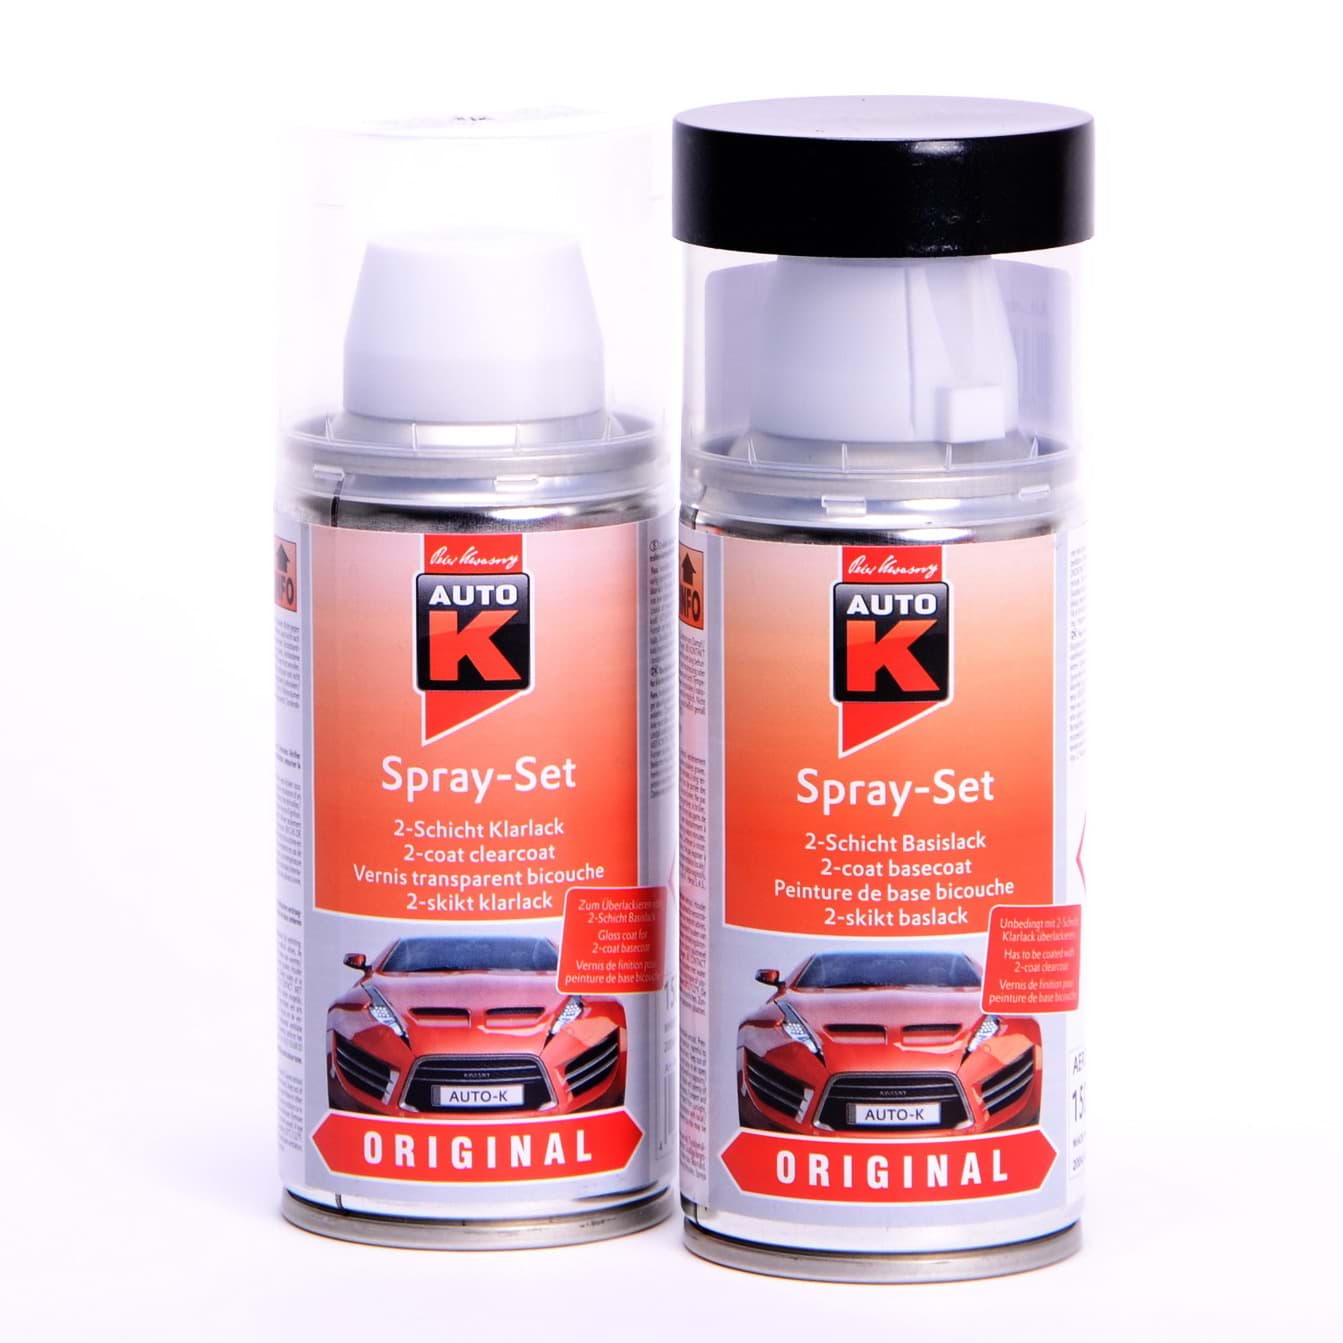 Изображение Auto-K Spray-Set Autolack für Volkswagen, VW, Audi, LY9C Ibisweiß 20127